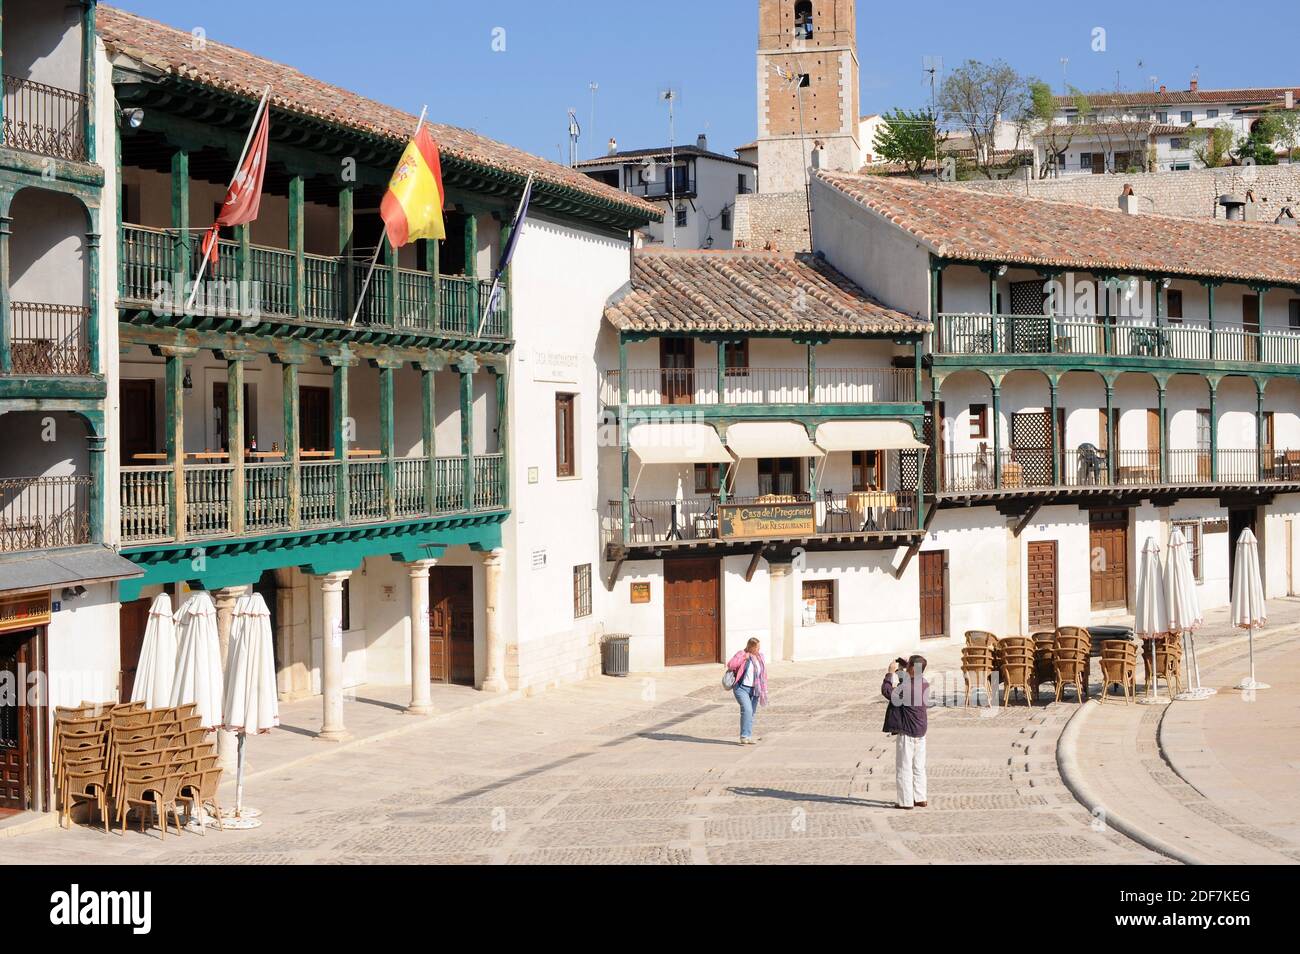 Chinchon, Plaza mayor (siglos 15-17) y la torre del reloj en el fondo. Comunidad de Madrid, España. Foto de stock